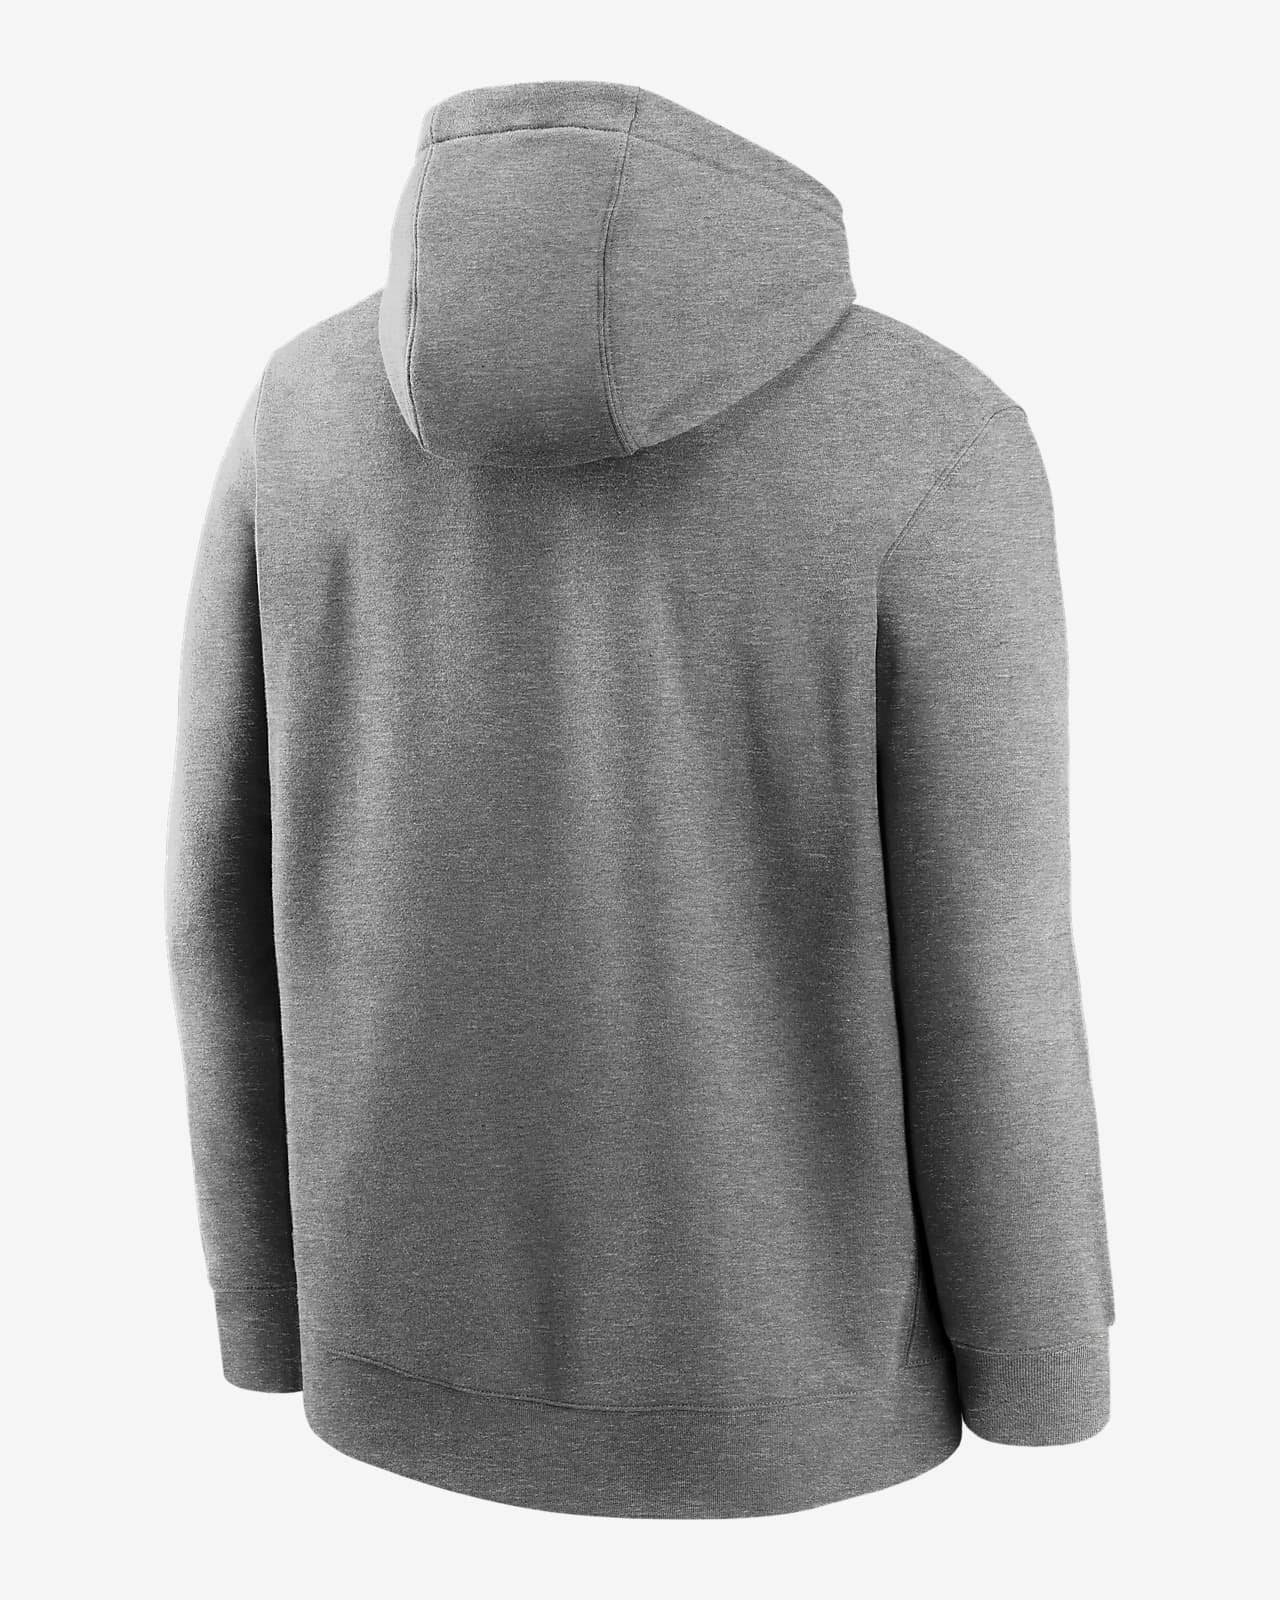 grey hoodie nike mens